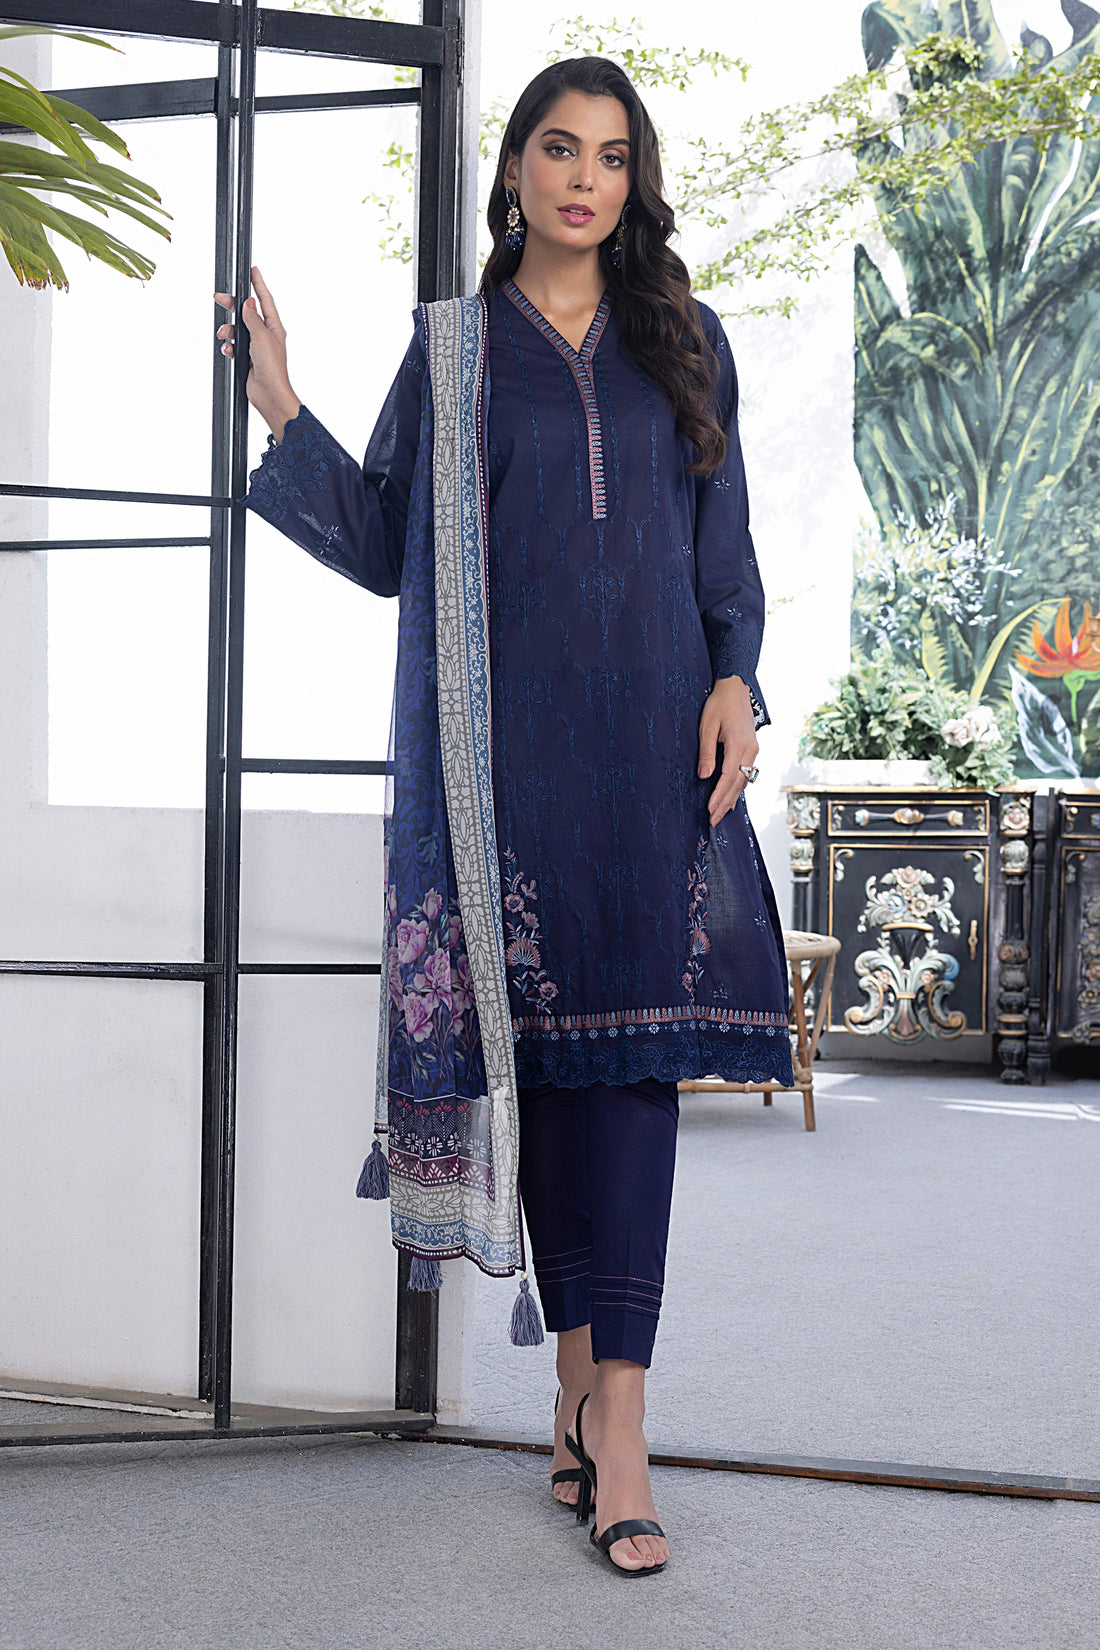 LSM | Spring Embroidered | 0122 - Khanumjan  Pakistani Clothes and Designer Dresses in UK, USA 